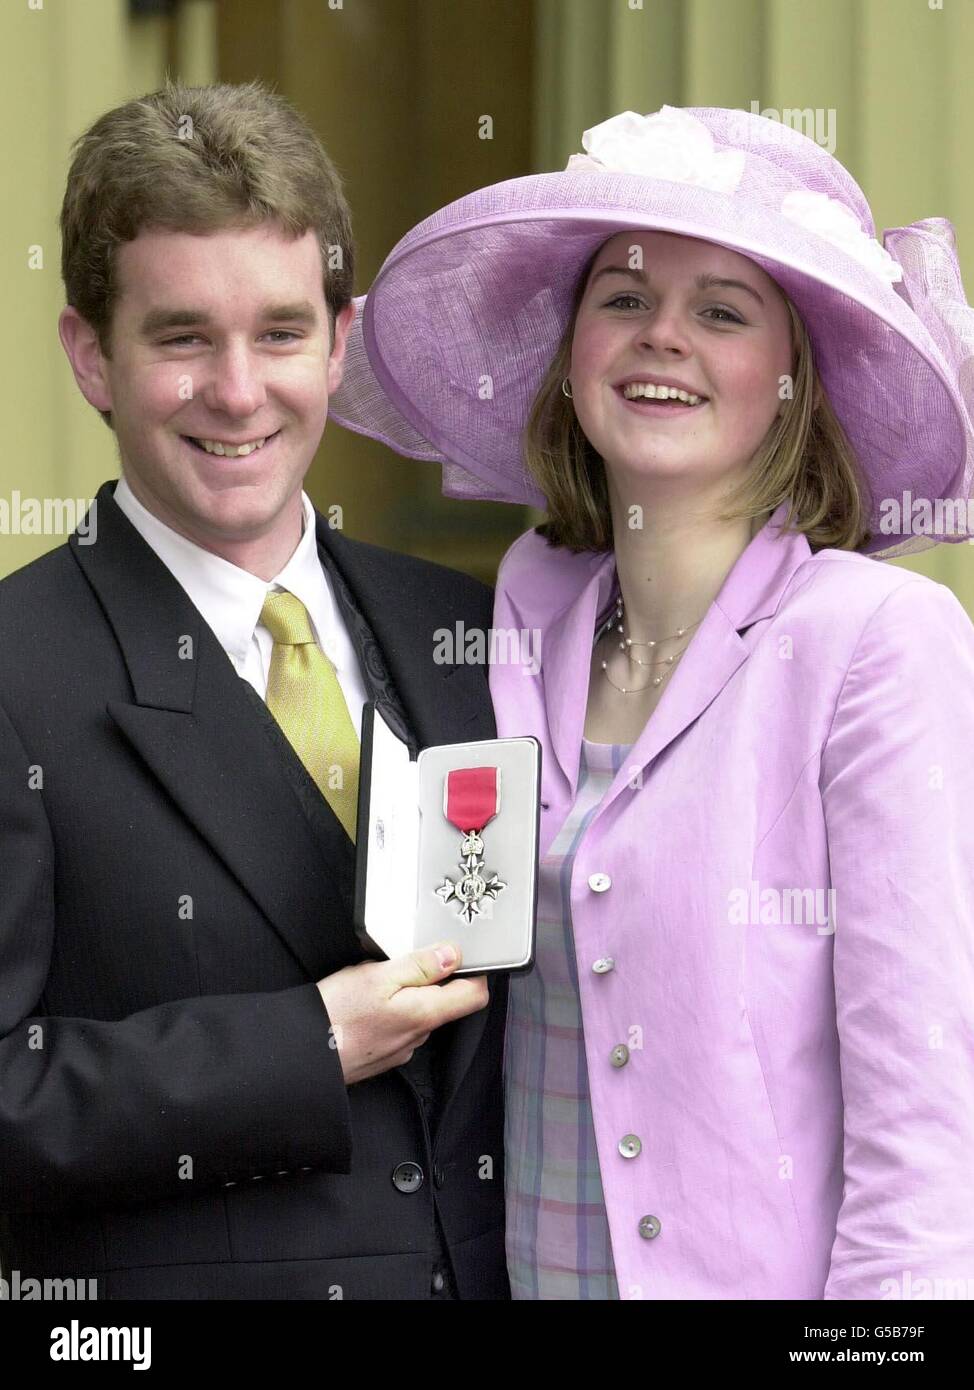 Richard Faulds, medaglia d'oro alle Olimpiadi di Sydney, con la sua fidanzata Polly Rayner, dopo aver ricevuto un MBE dalla Regina Elisabetta II della Gran Bretagna a Buckingham Palace a Londra. Foto Stock